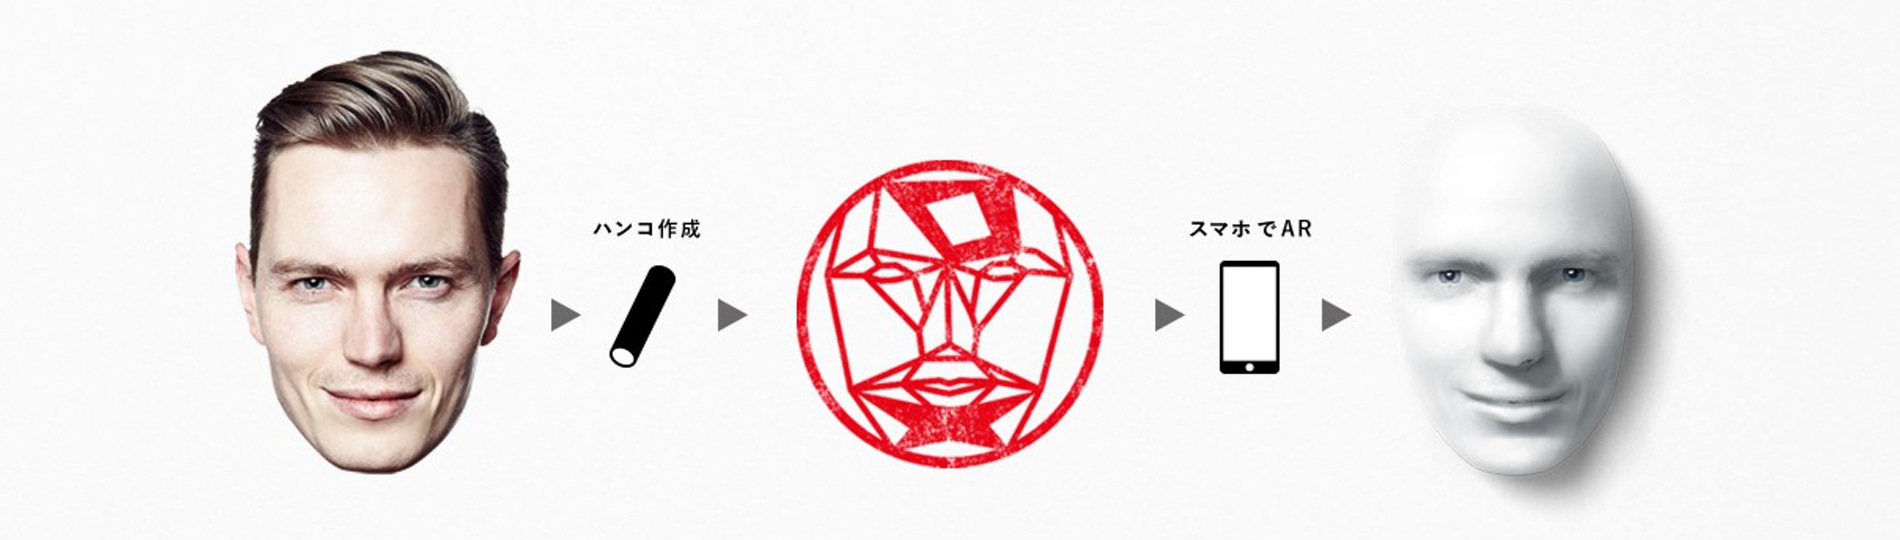 ハンコの印面から本人の顔と名前を表示するARアプリ 「SXSW – HANKOHAN」